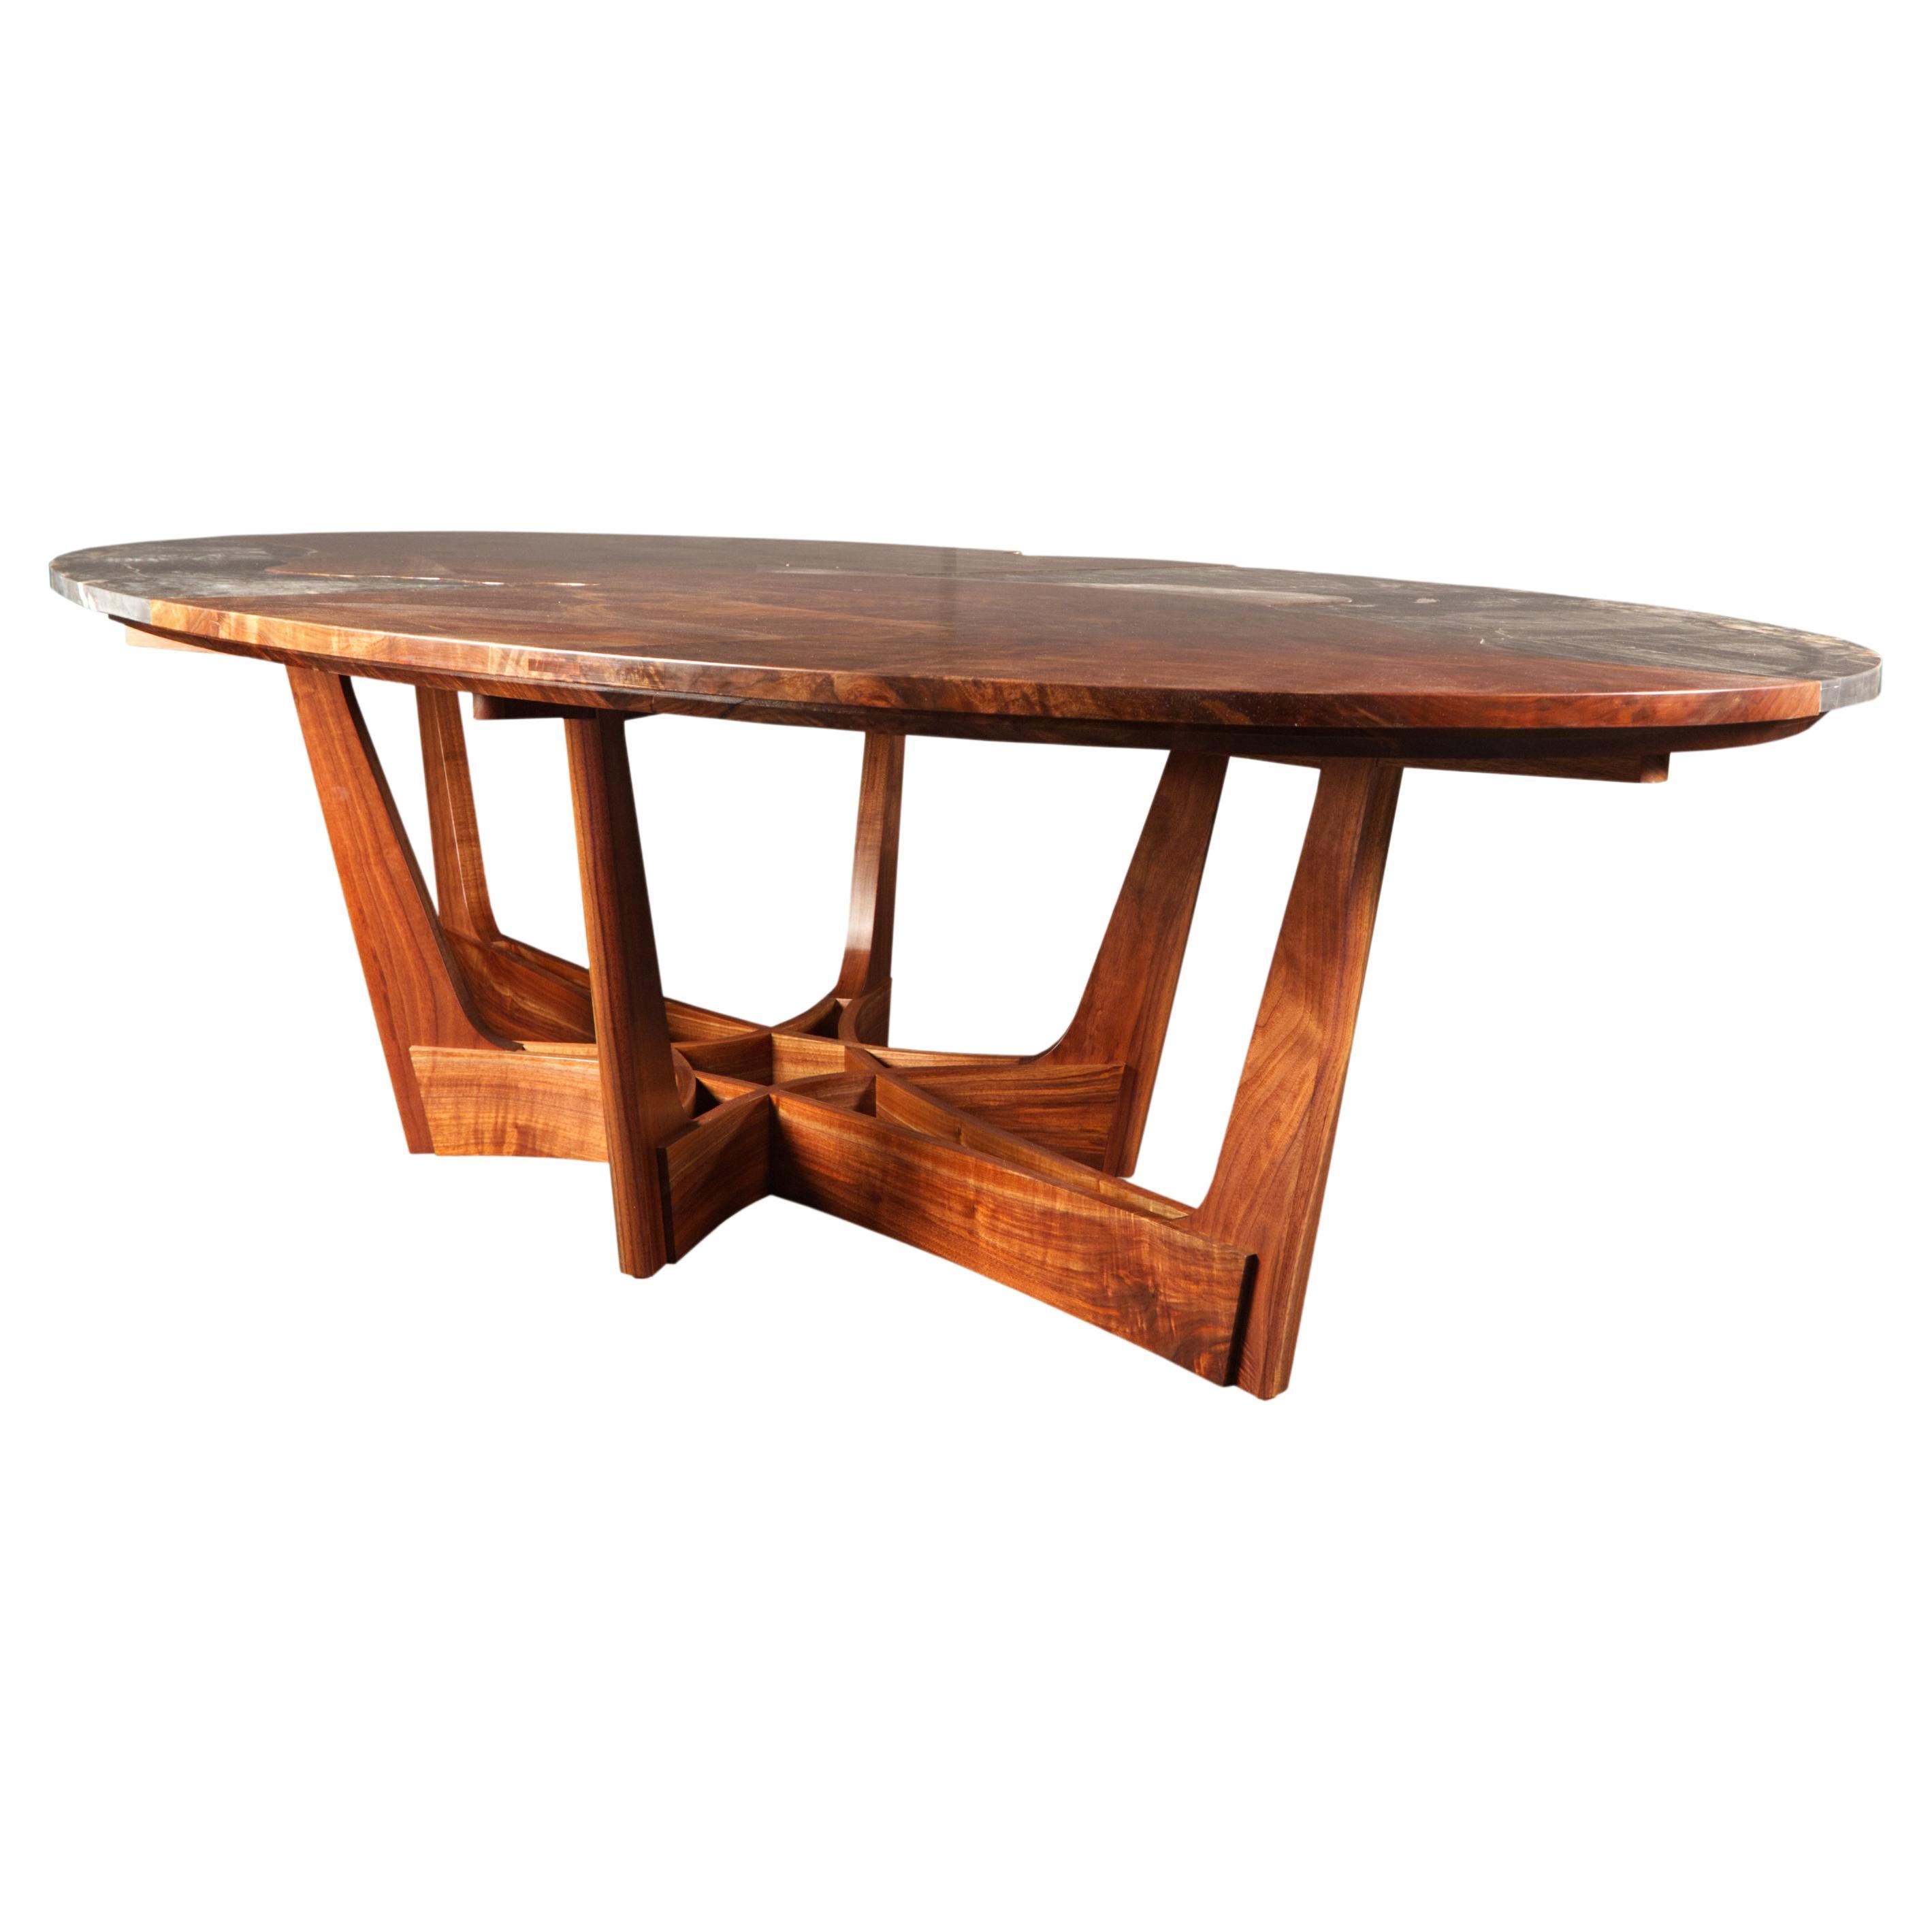 La table de salle à manger Hayden de Drake Woodworking est un exemple de design et d'artisanat. Fabriqué à la main à partir de cinq plaques distinctes de noyer Claro, le plateau de la table est un patchwork de bois incroyablement figuré et est